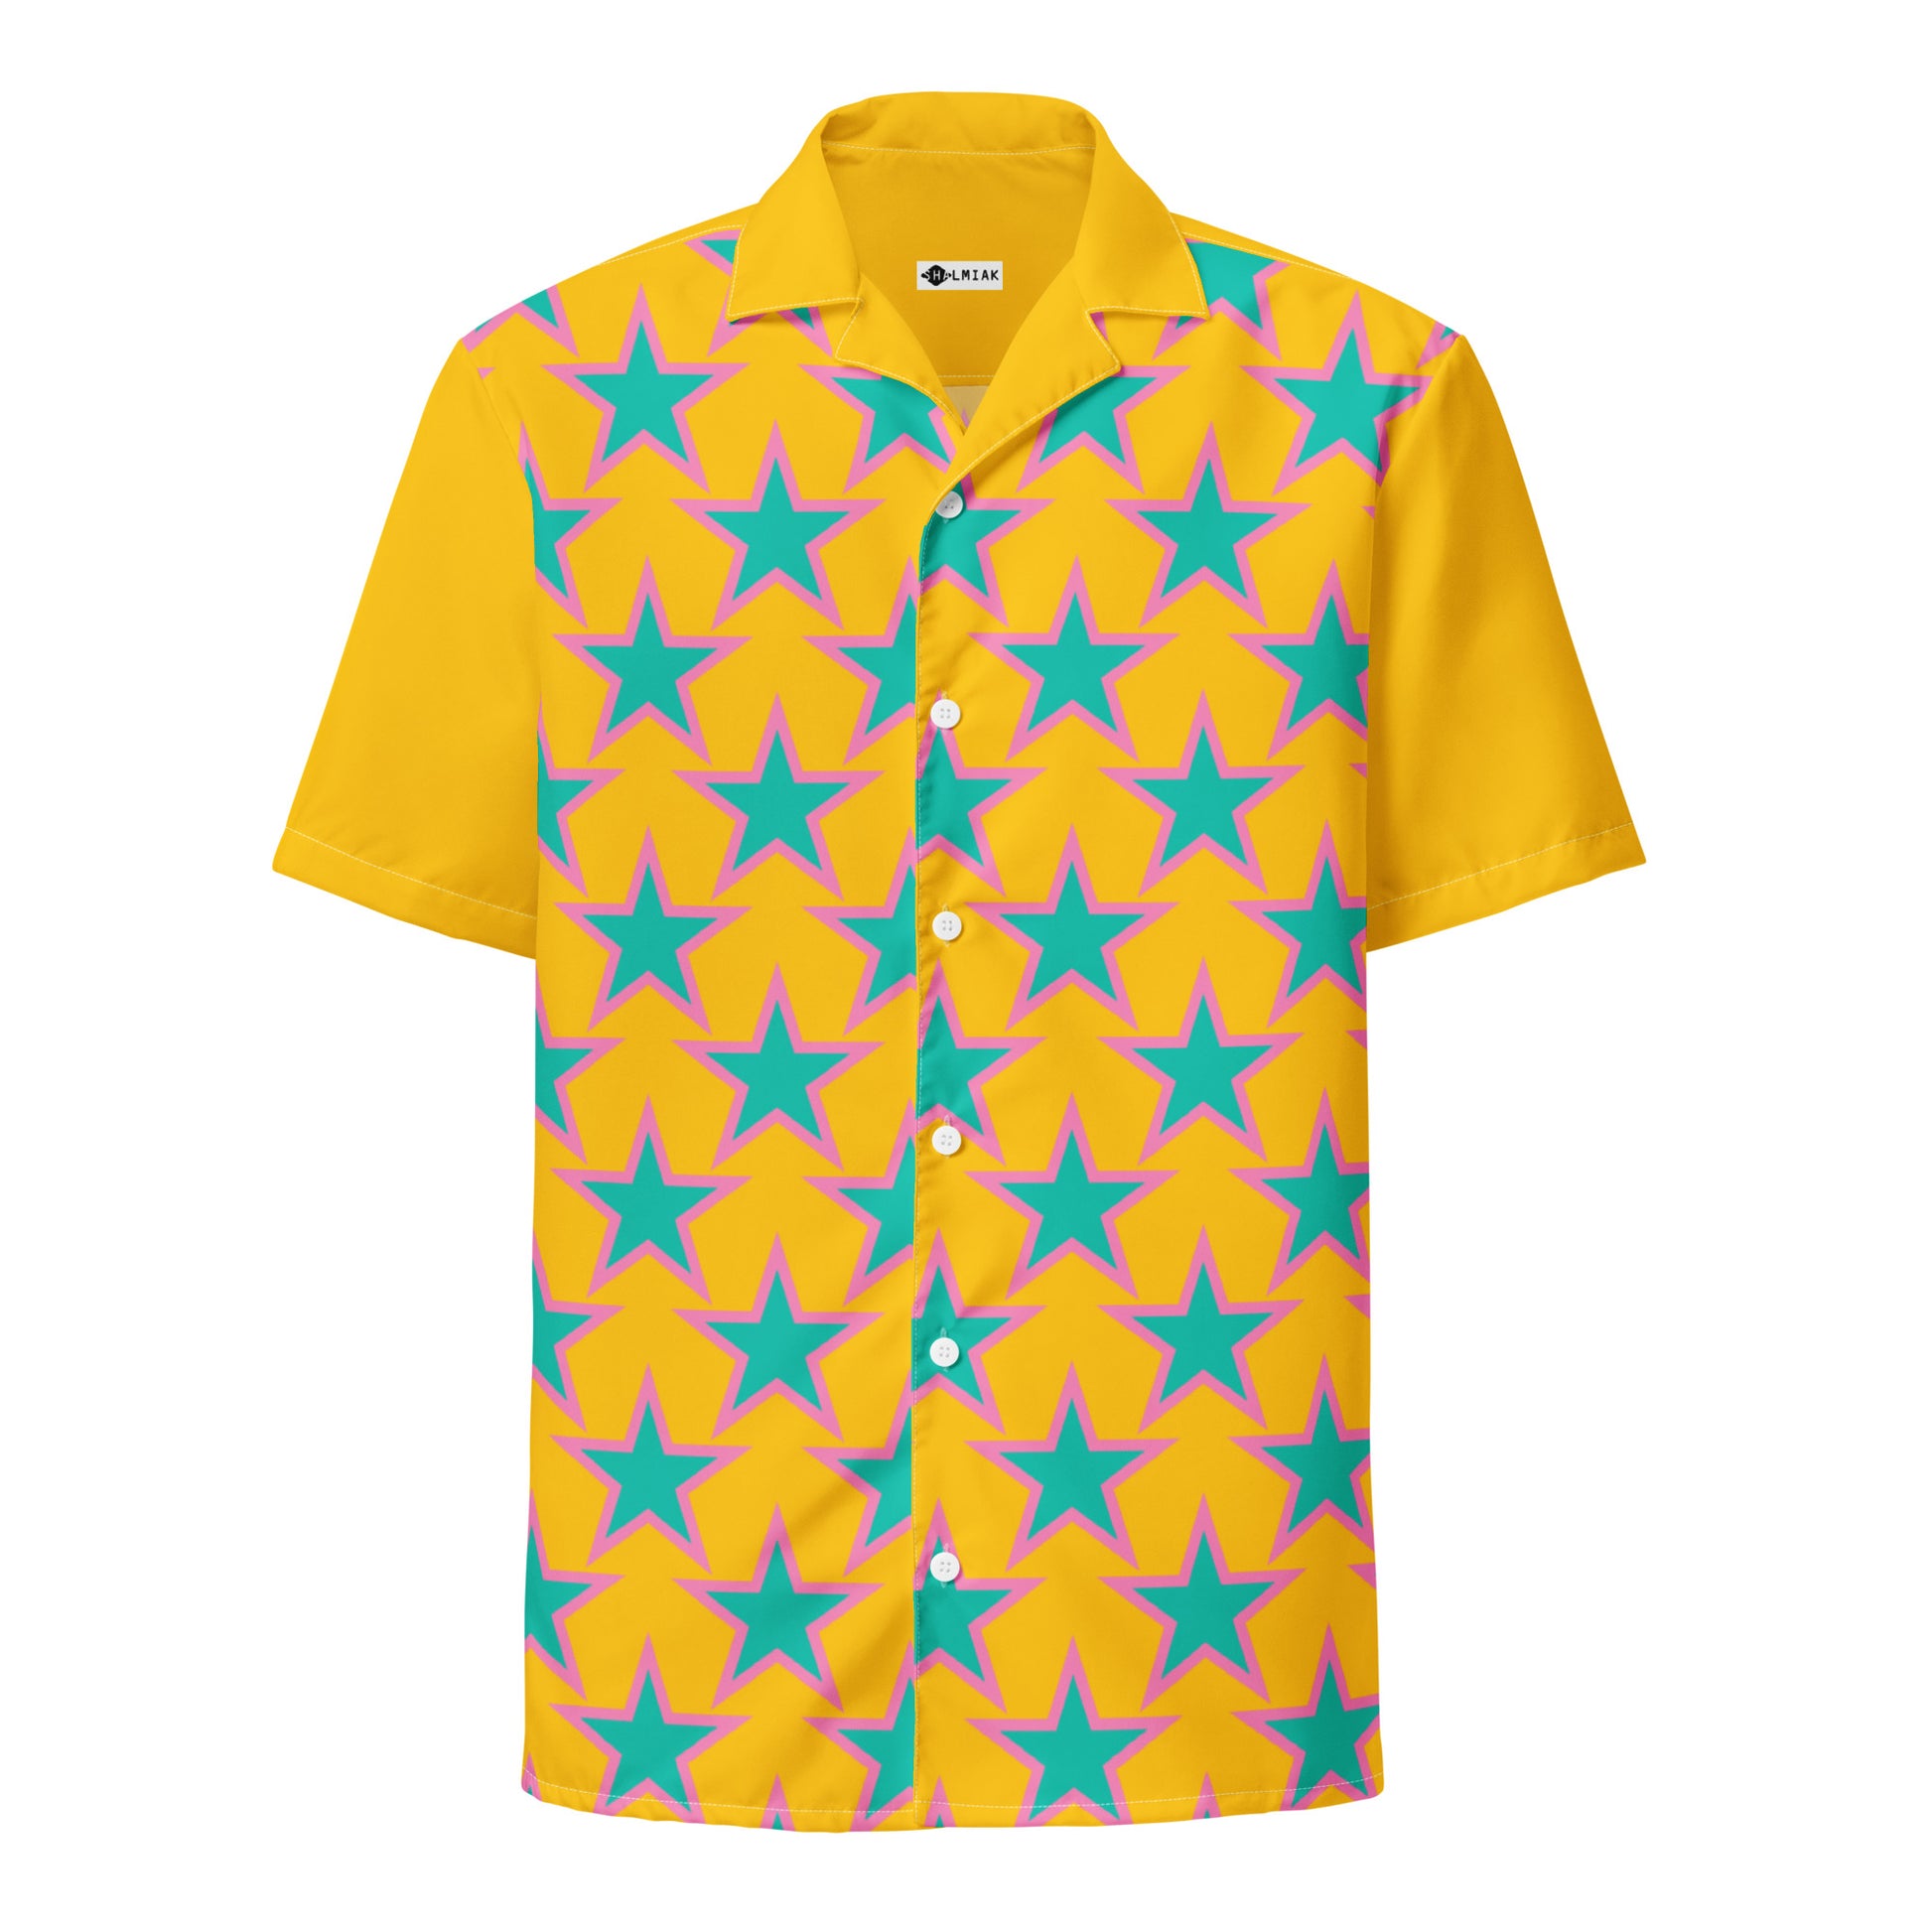 ELLIE STAR yellow - Unisex button shirt